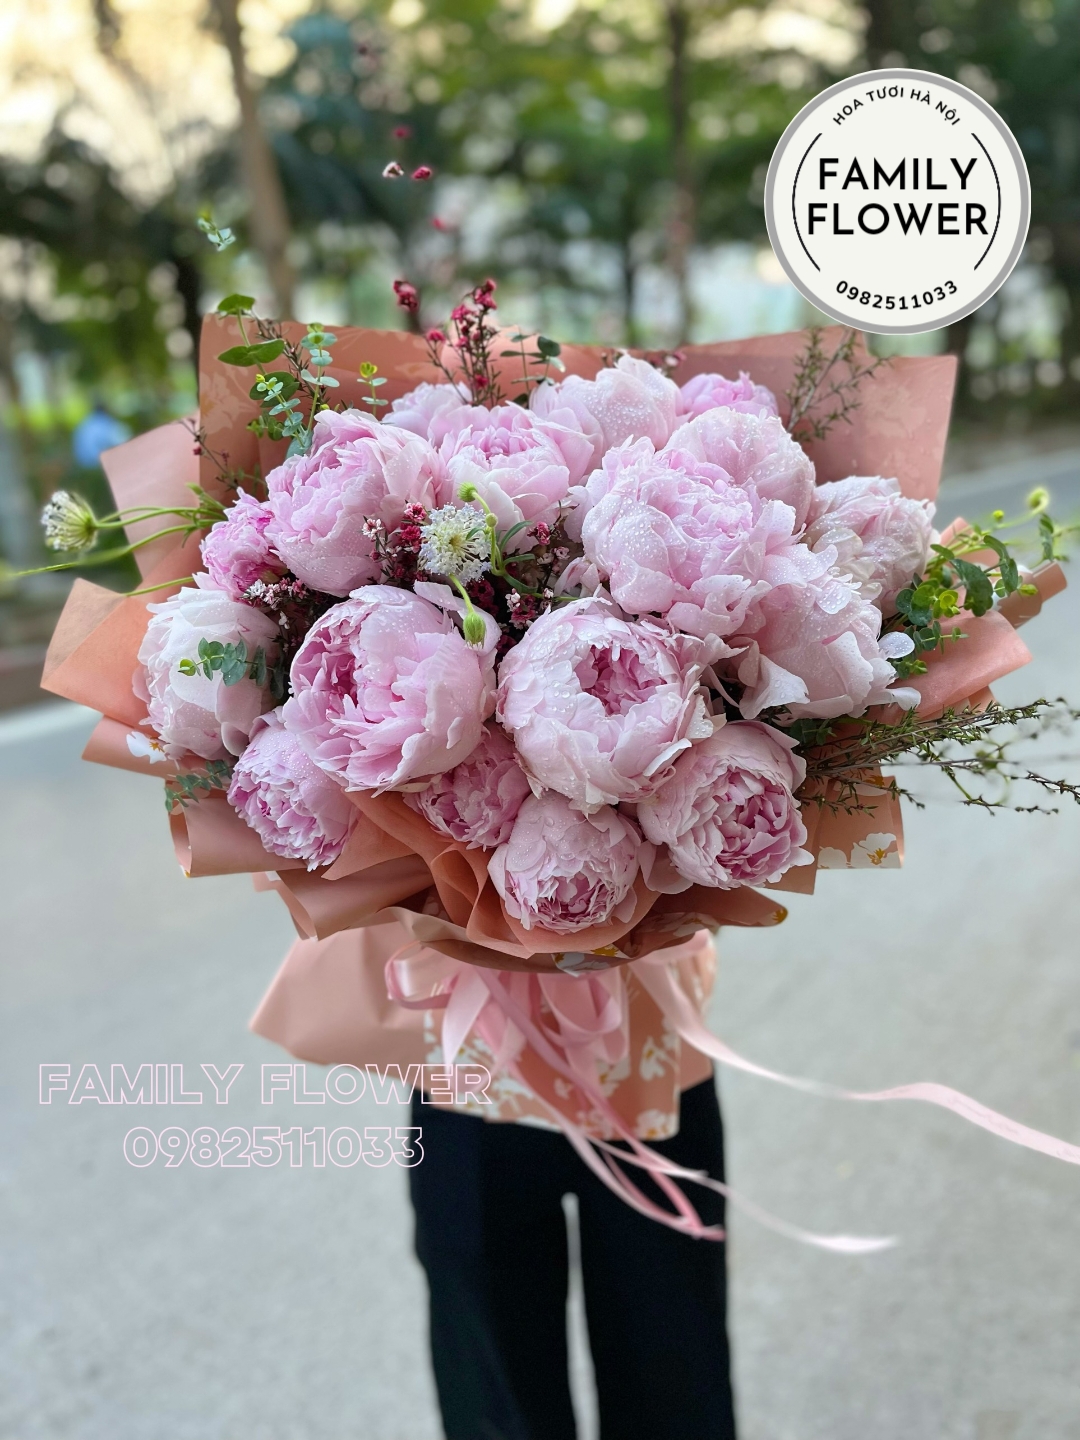 Bó hoa mẫu đơn nhập khẩu hà lan tặng bạn gái ở quận Hoàn Kiếm ! Hoa